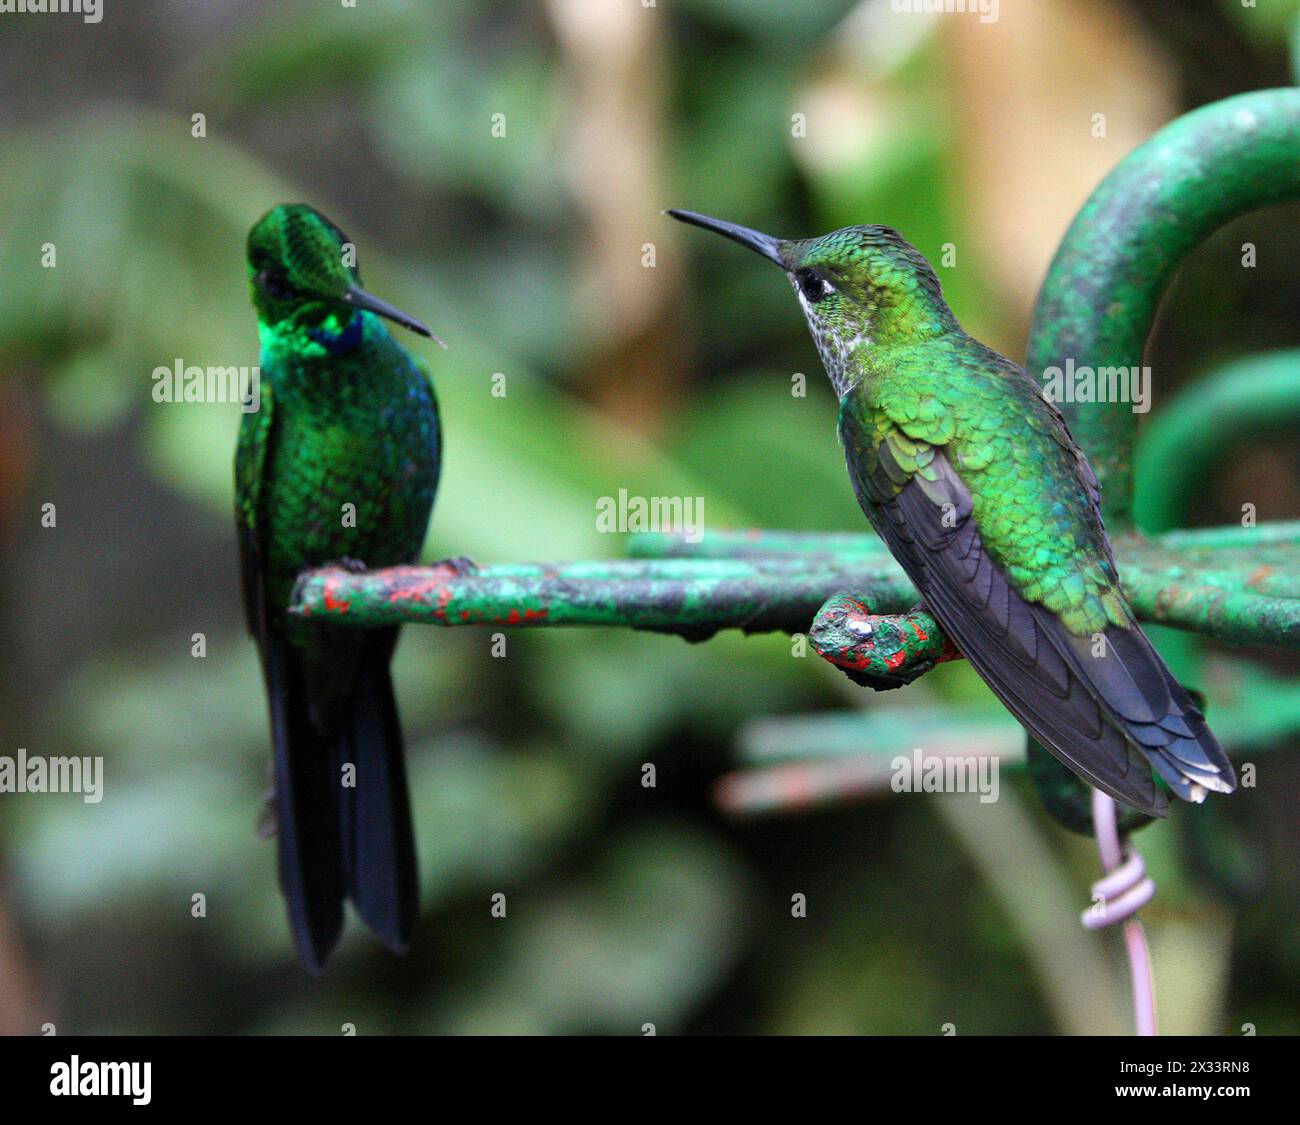 Männlich (links) und weiblich (rechts) grüngekrönte Brilliant, Heliodoxa jacula, Trochilidae. Monteverde, Costa Rica. Auch bekannt als Green-Front brillant Stockfoto